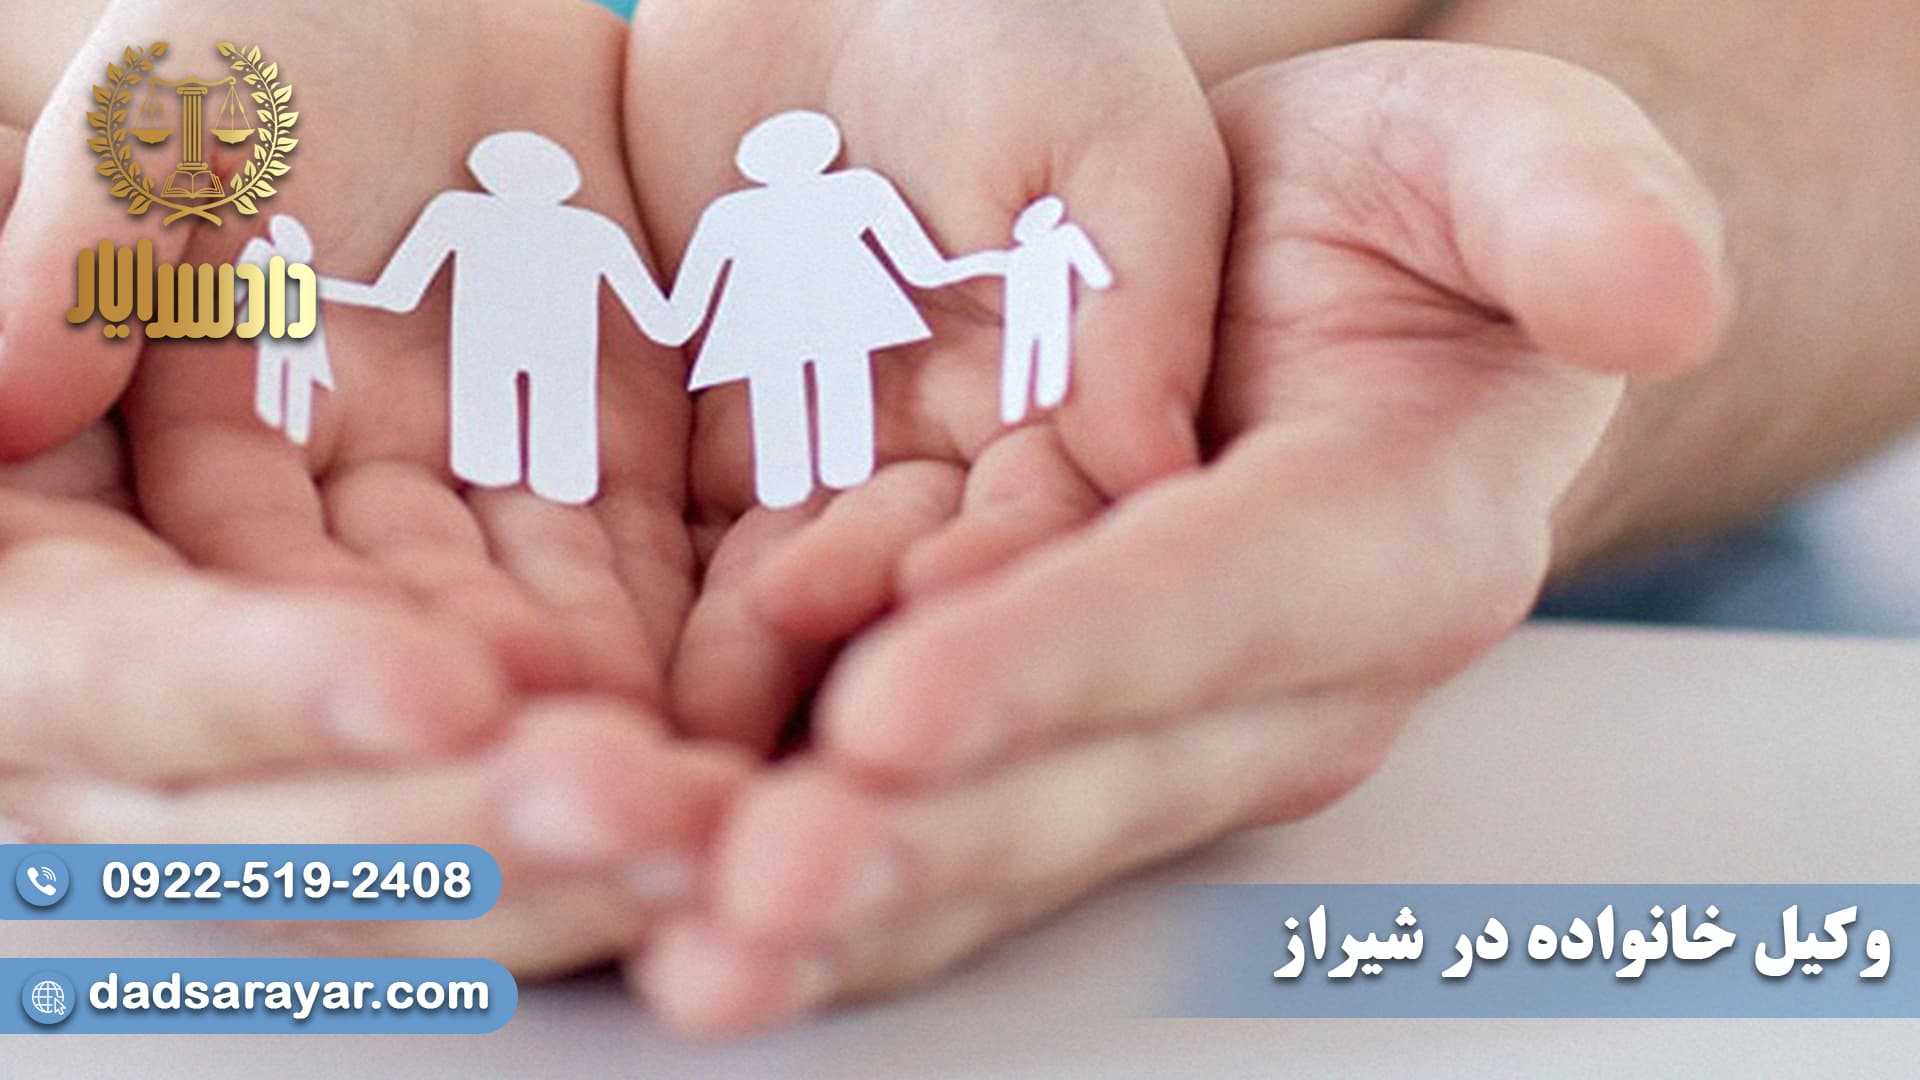 وکیل خانواده در شیراز+مشاوره تلفنی 24 ساعته و رایگان 09225192408 